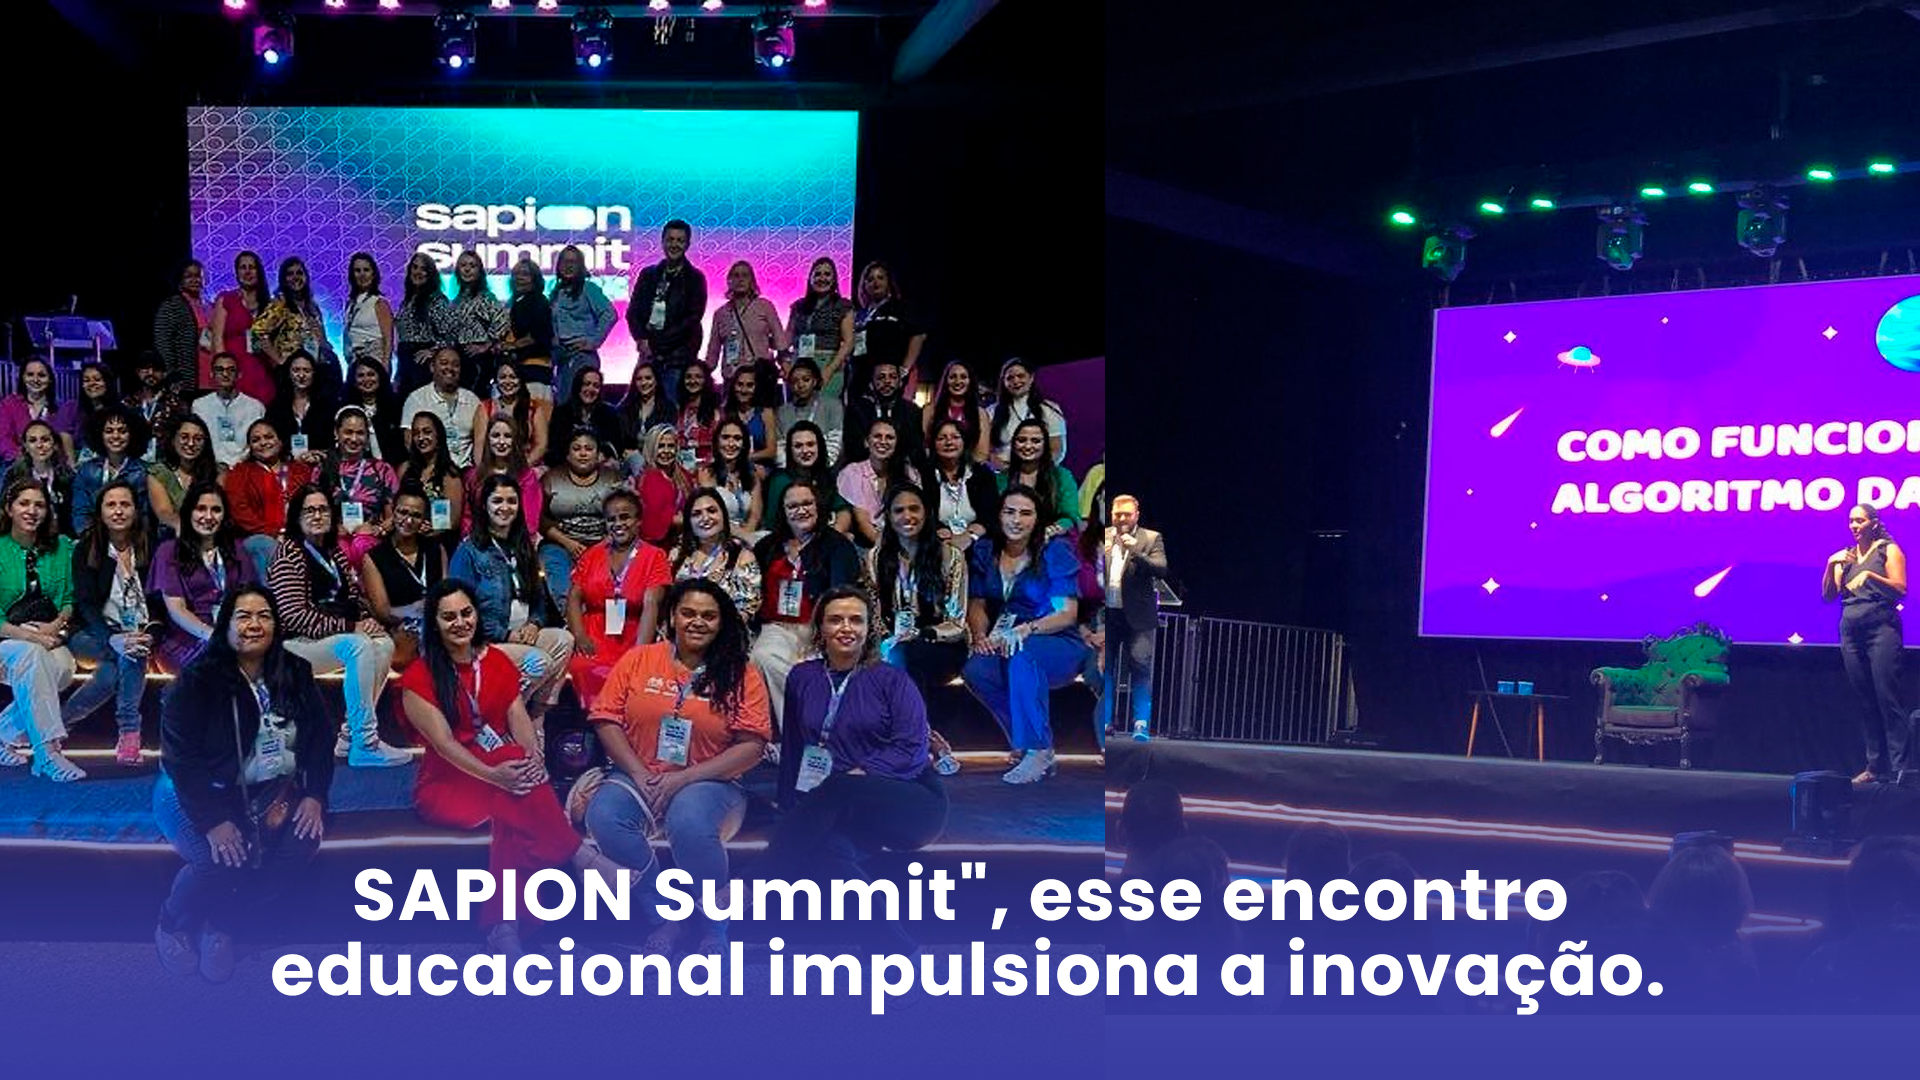 Sapion Summit